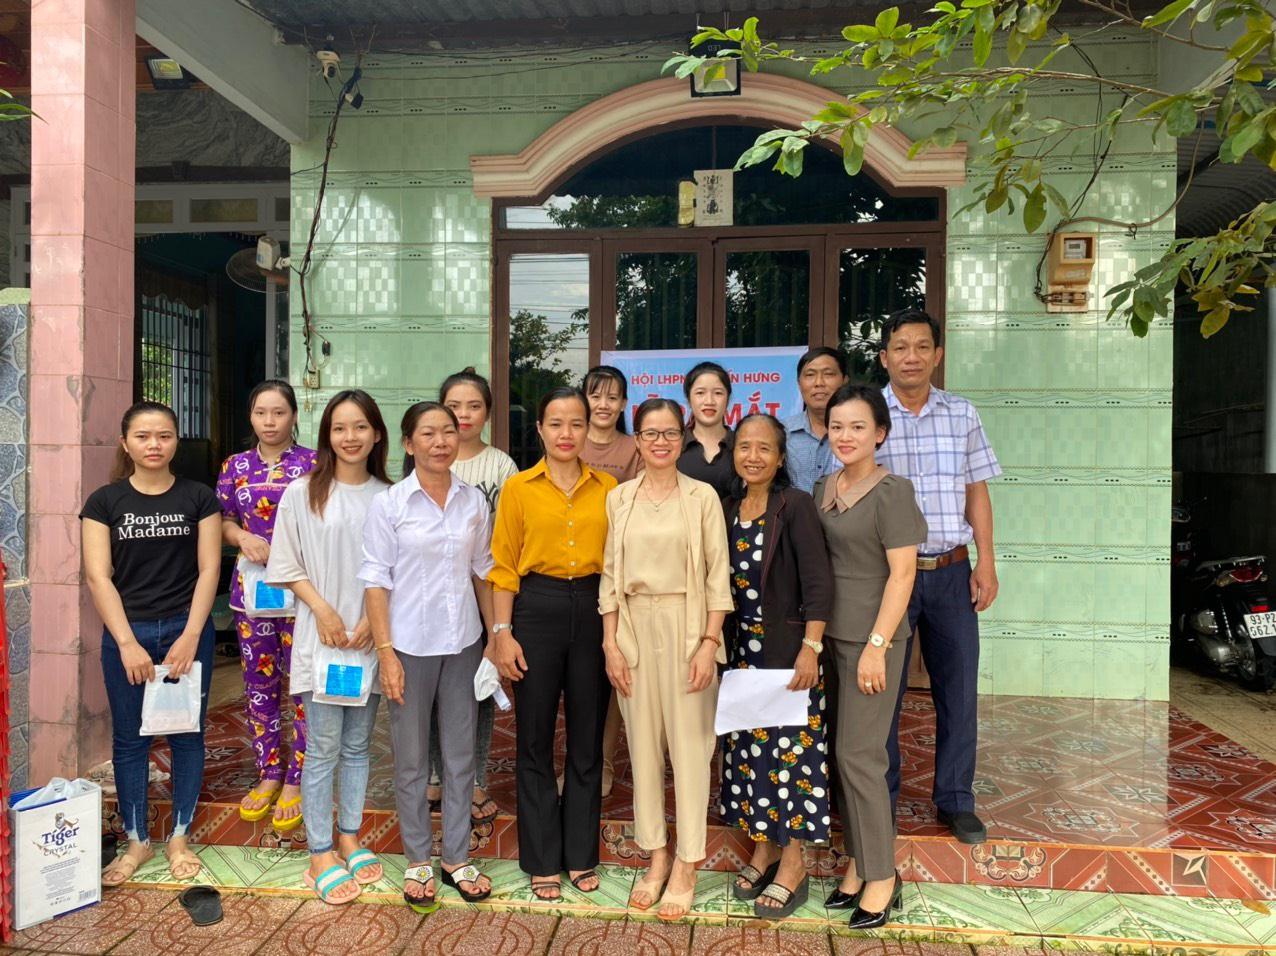 Lãnh đạo Hội LHPN thành phố Đồng Xoài và lãnh đạo Đảng ủy xã Tiến Hưng chụp hình lưu niệm cùng các hội viên chi hội phụ nữ khu nhà trọ Long Hòe